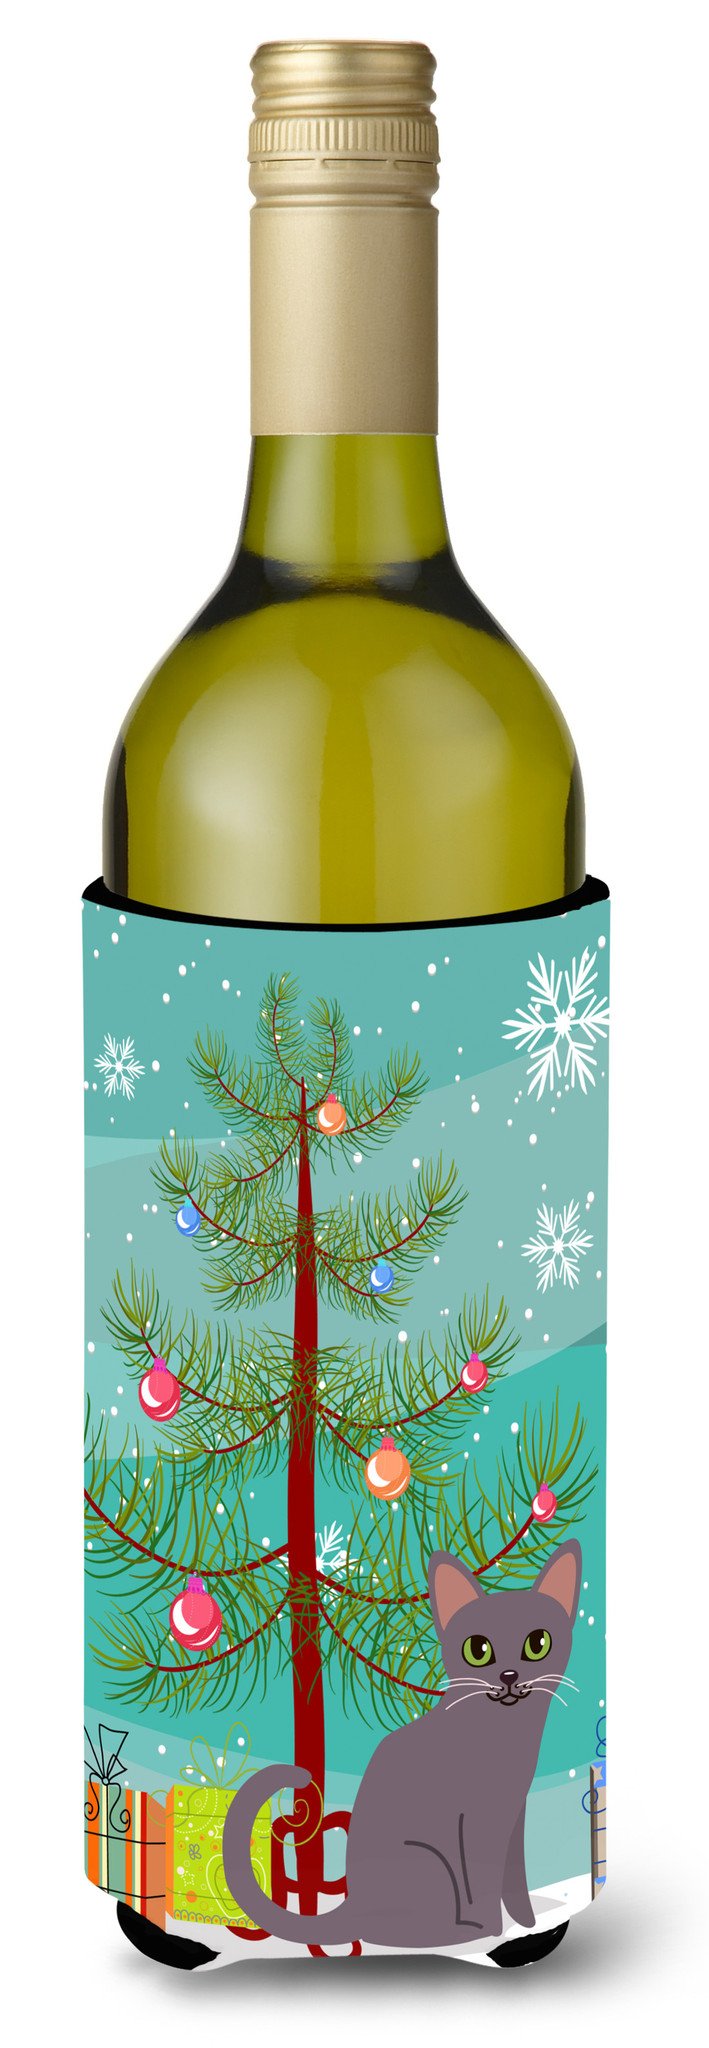 Korat Cat Merry Christmas Tree Wine Bottle Beverge Insulator Hugger BB4422LITERK by Caroline's Treasures